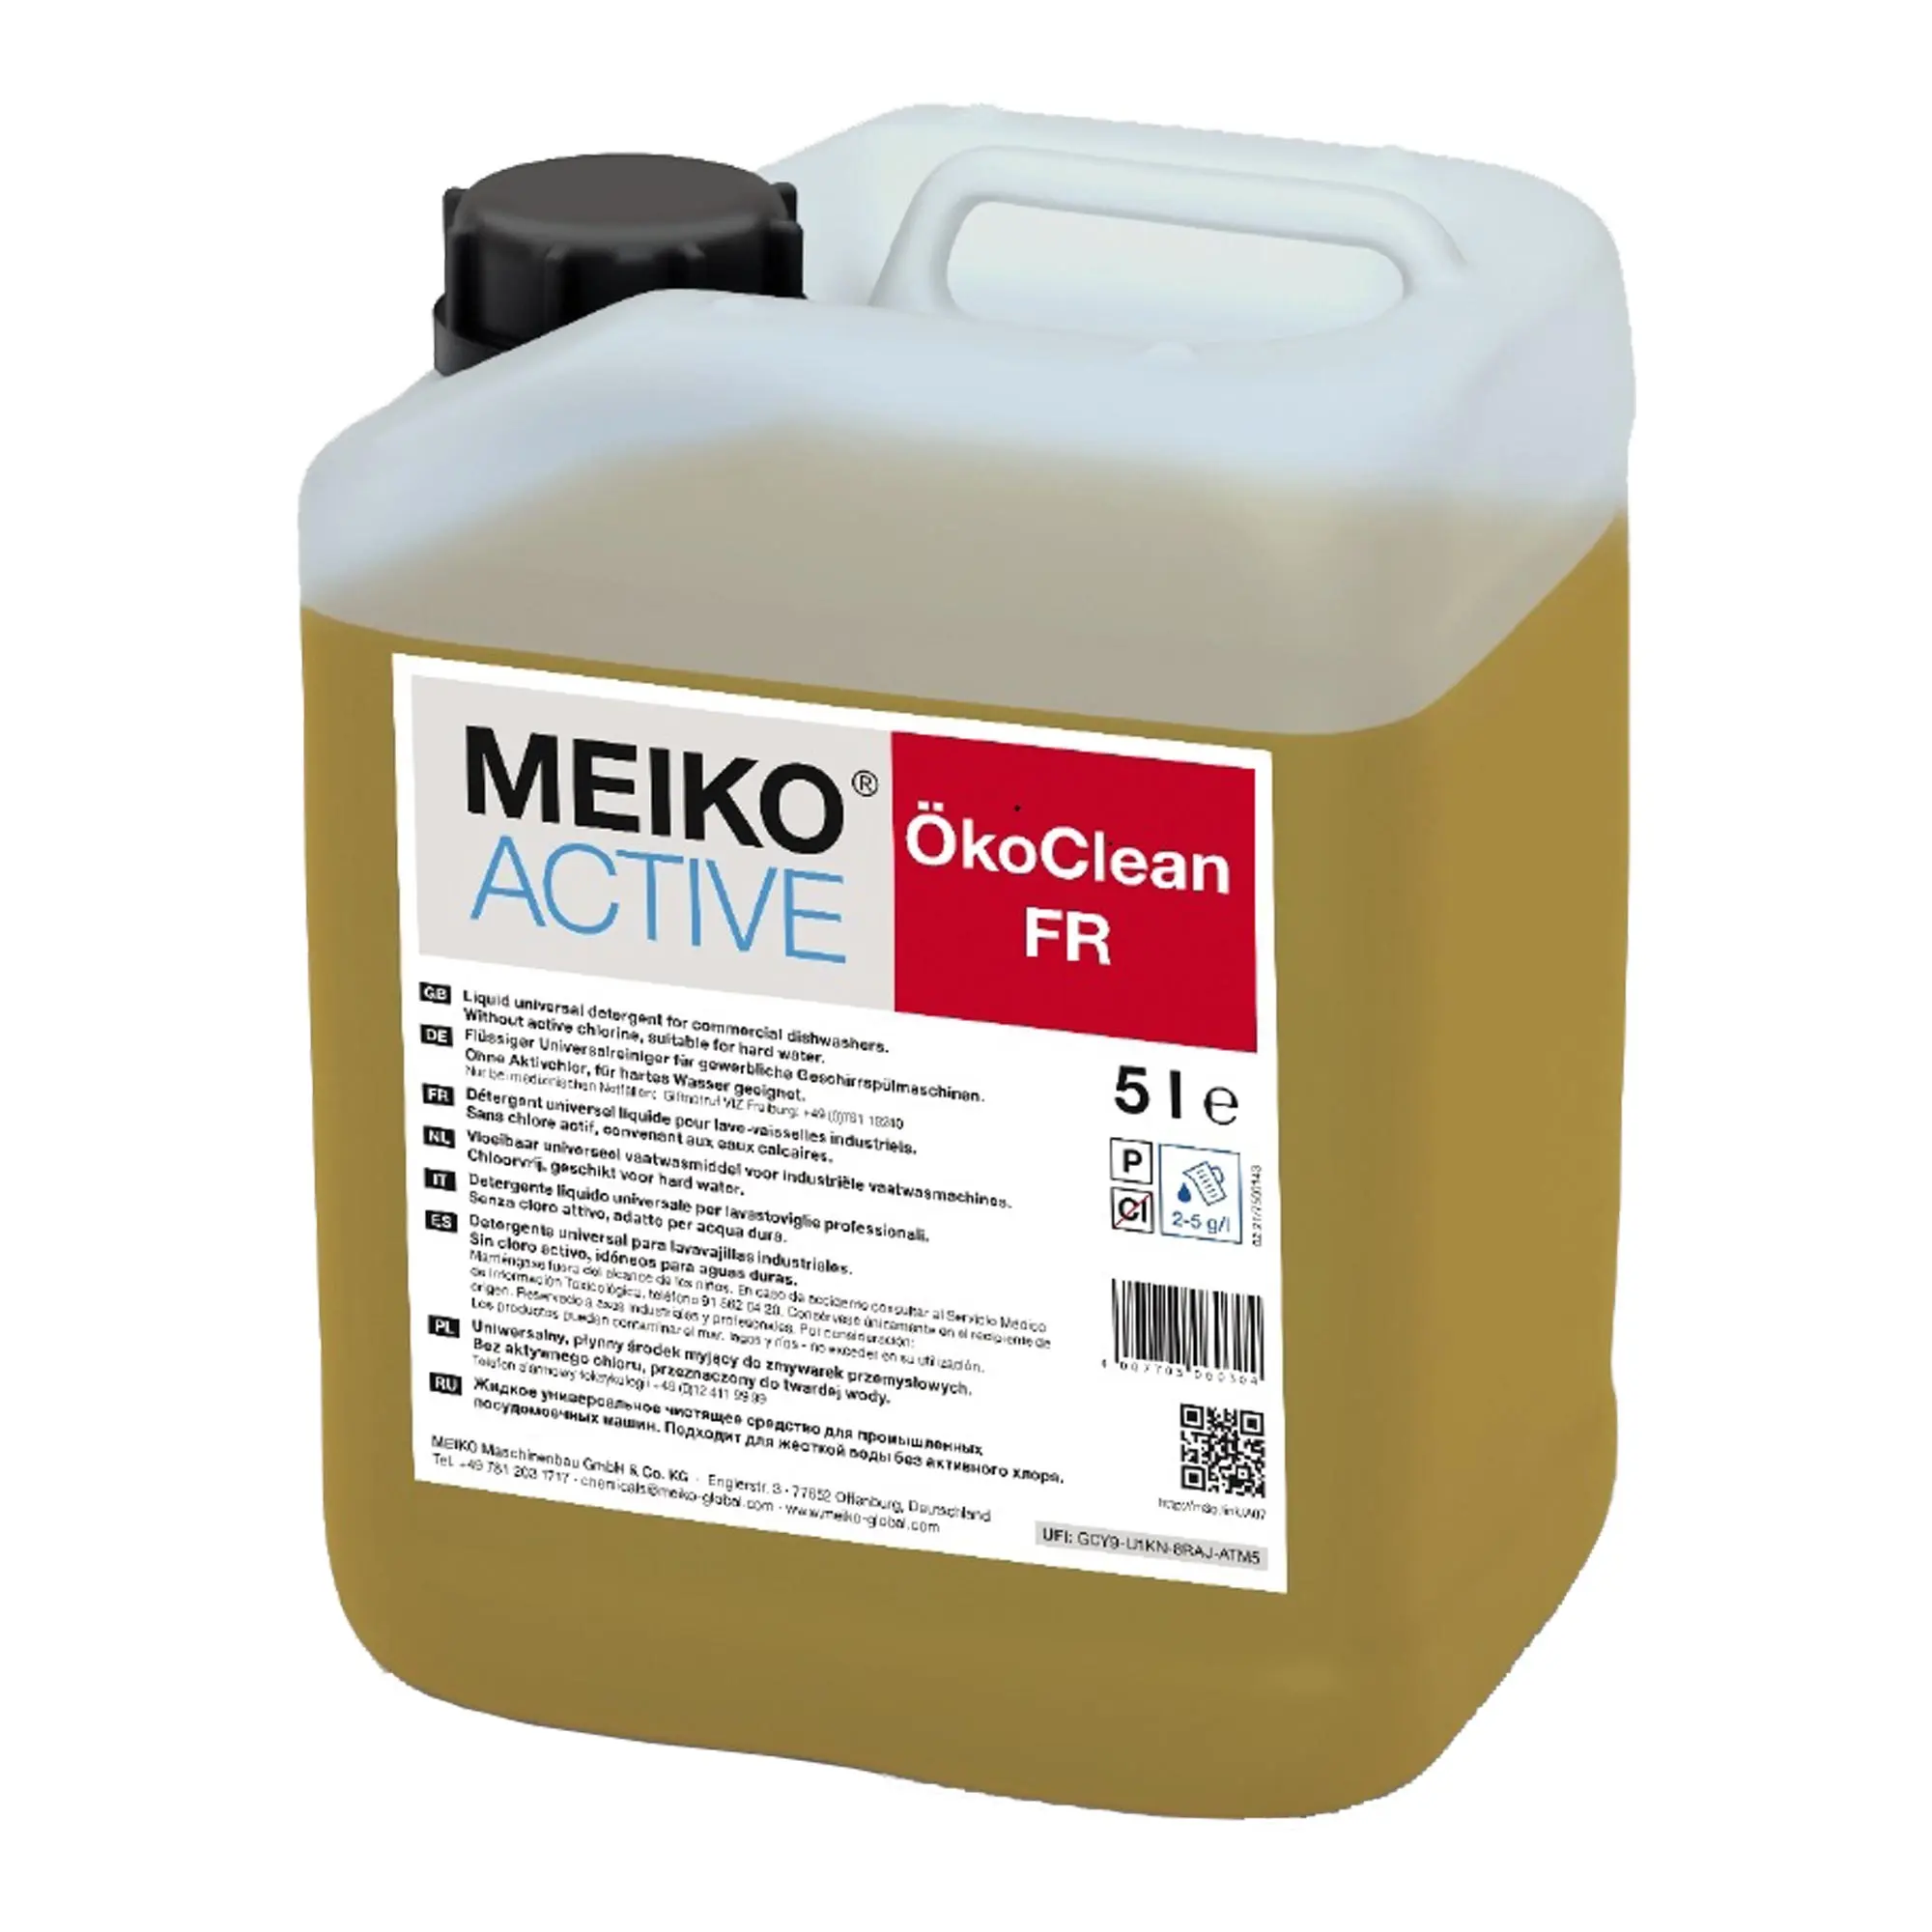 Meiko Active ÖkoClean FR flüssiger Universalreiniger für Geschirrspülmaschinen